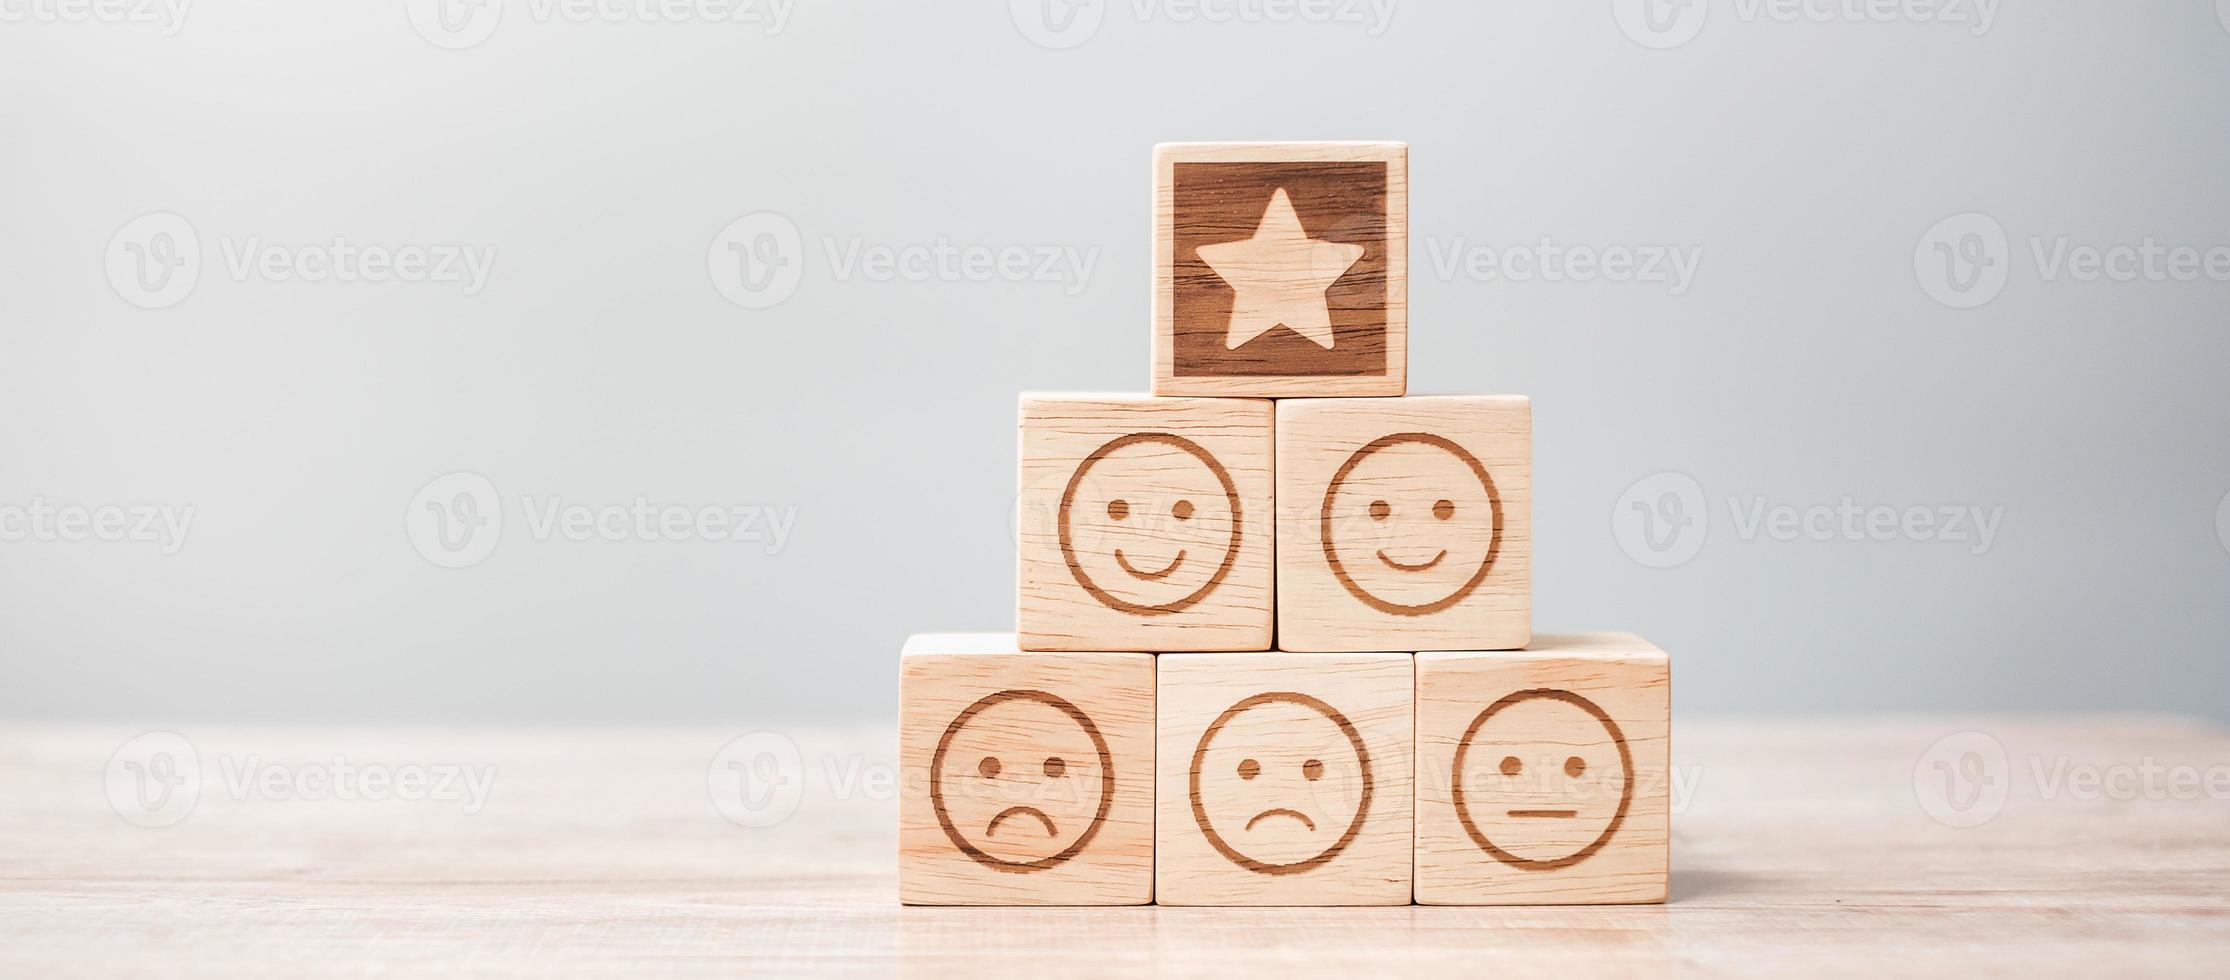 emotie gezicht en ster symbool blokken op tafel achtergrond. servicebeoordeling, rangschikking, klantbeoordeling, tevredenheid, evaluatie en feedbackconcept foto